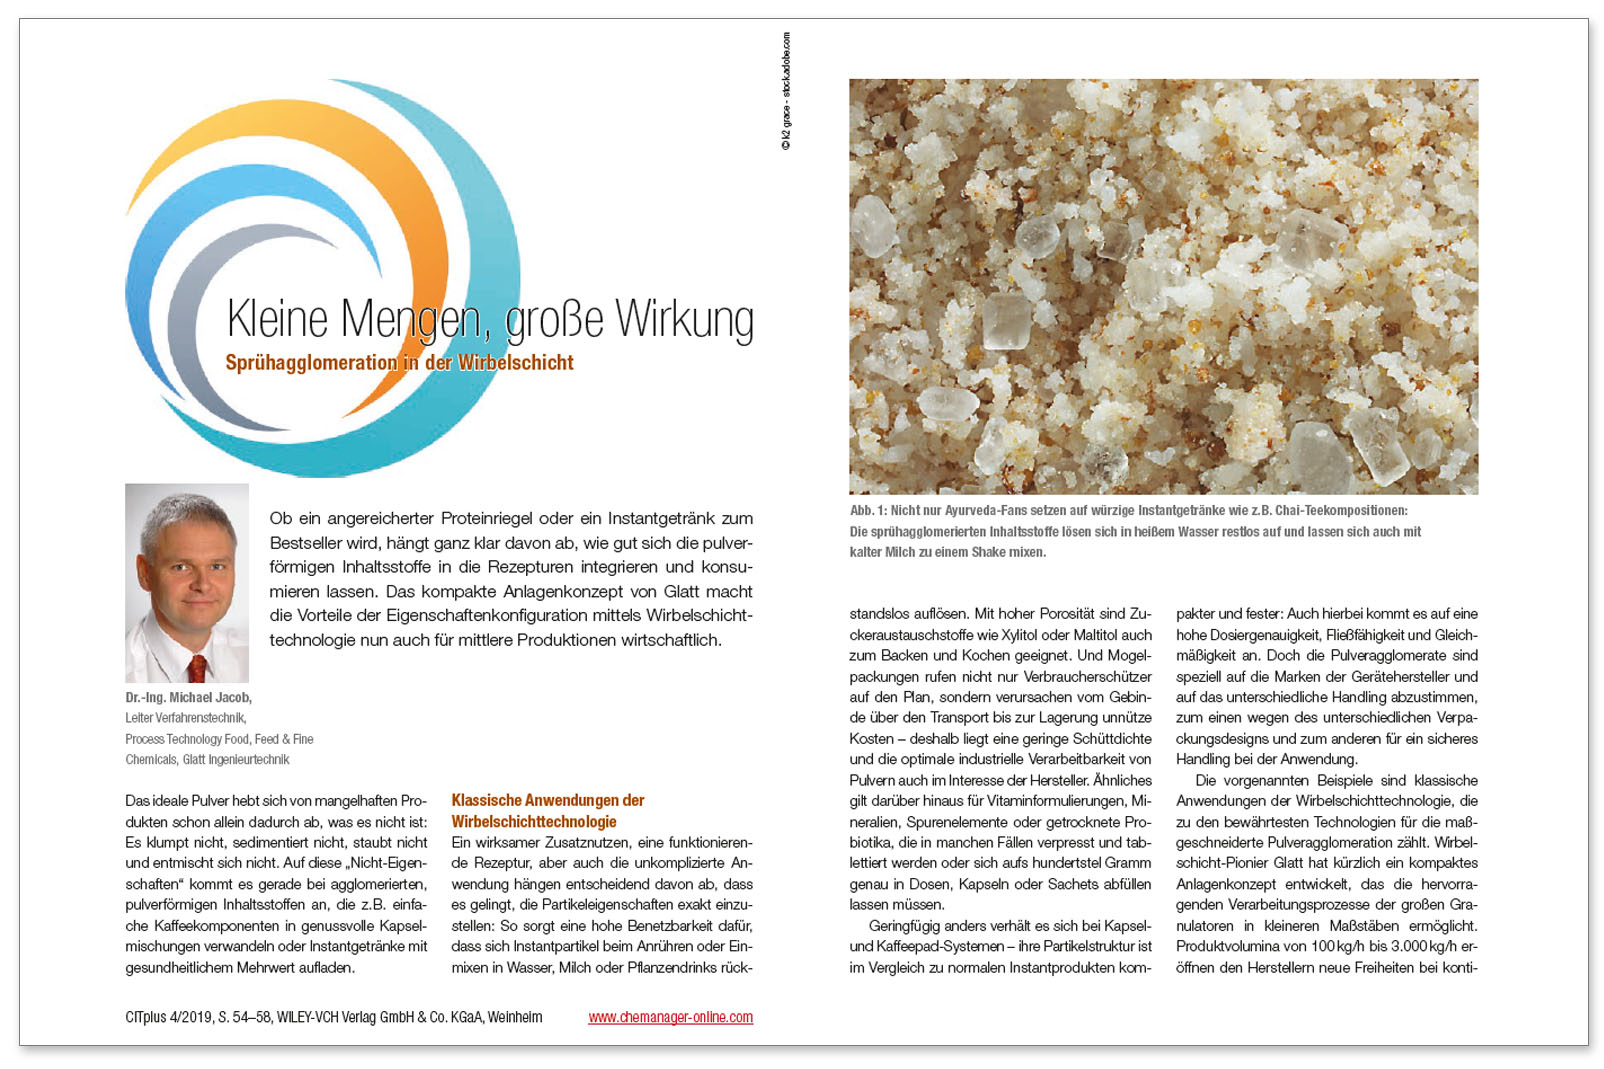 Glatt technical article on 'Kleine Mengen grosse Wirkung - Sprühagglomeration in der Wirbelschicht', published in the trade magazin 'CITplus', issue 04.2019, Wiley-VCH Verlag